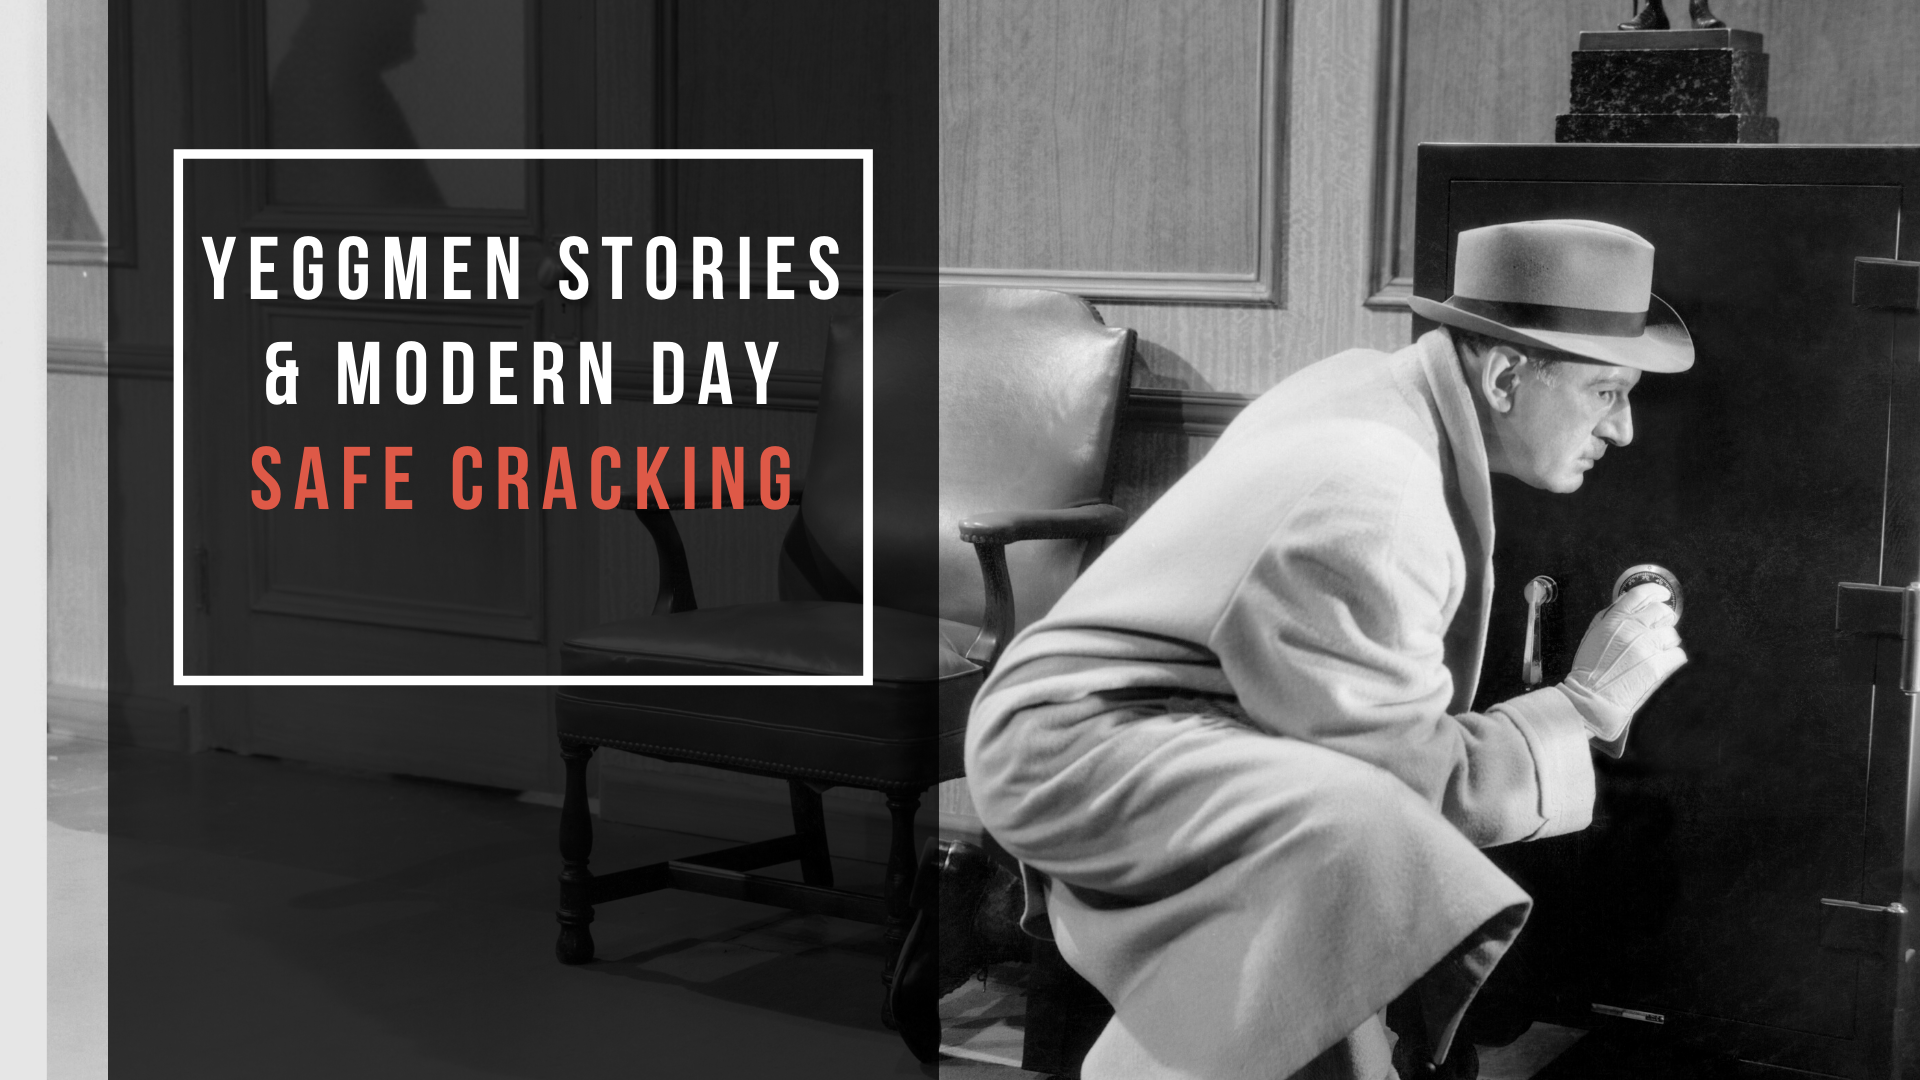 Yeggmen Stories & Modern Day Safe Cracking